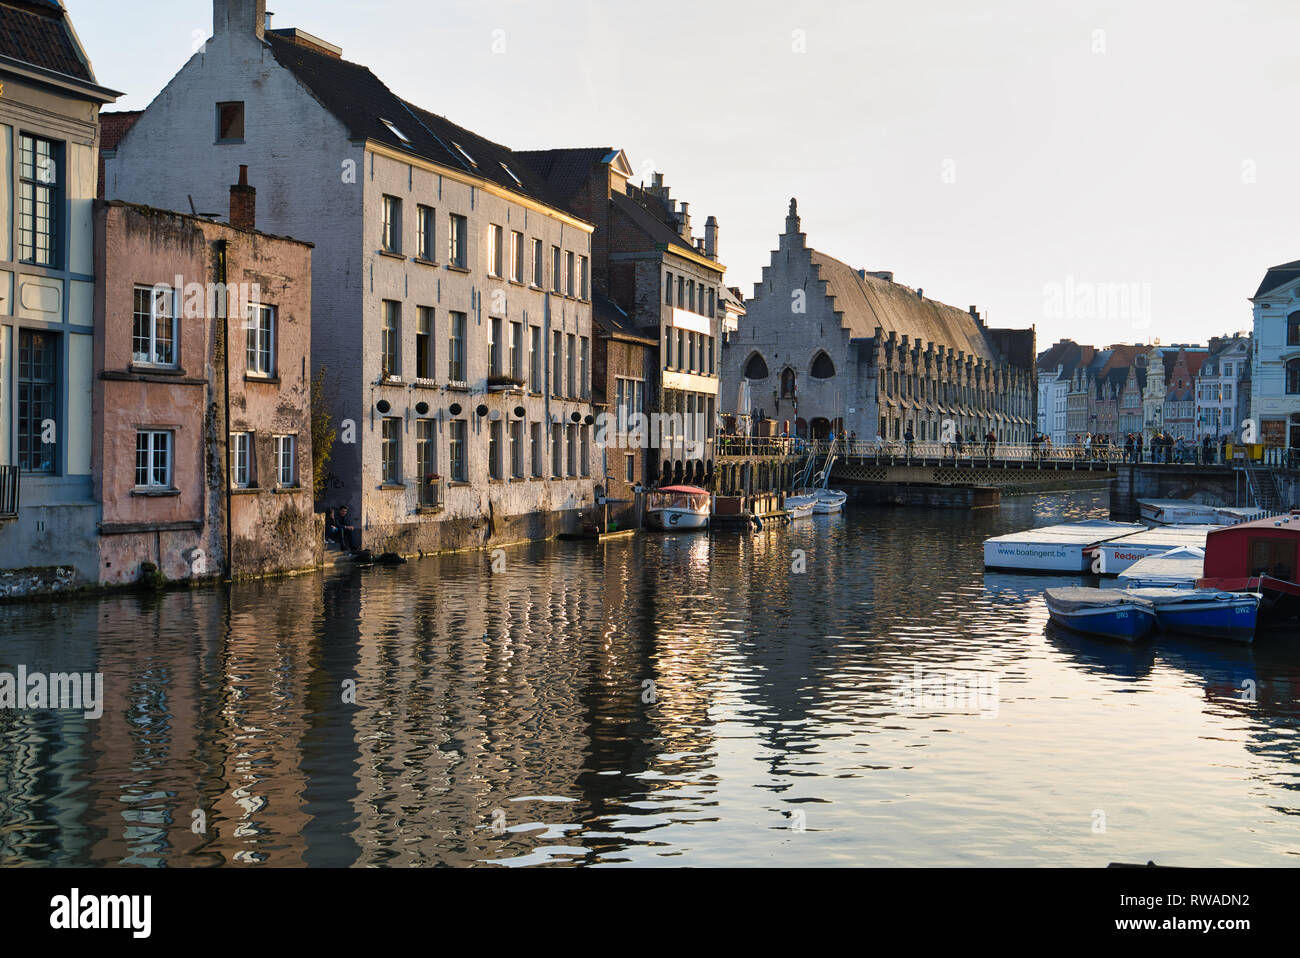 GENT, Belgio - 17 febbraio 2019: eleganti edifici vecchi sulle rive di un canale per acqua Foto Stock